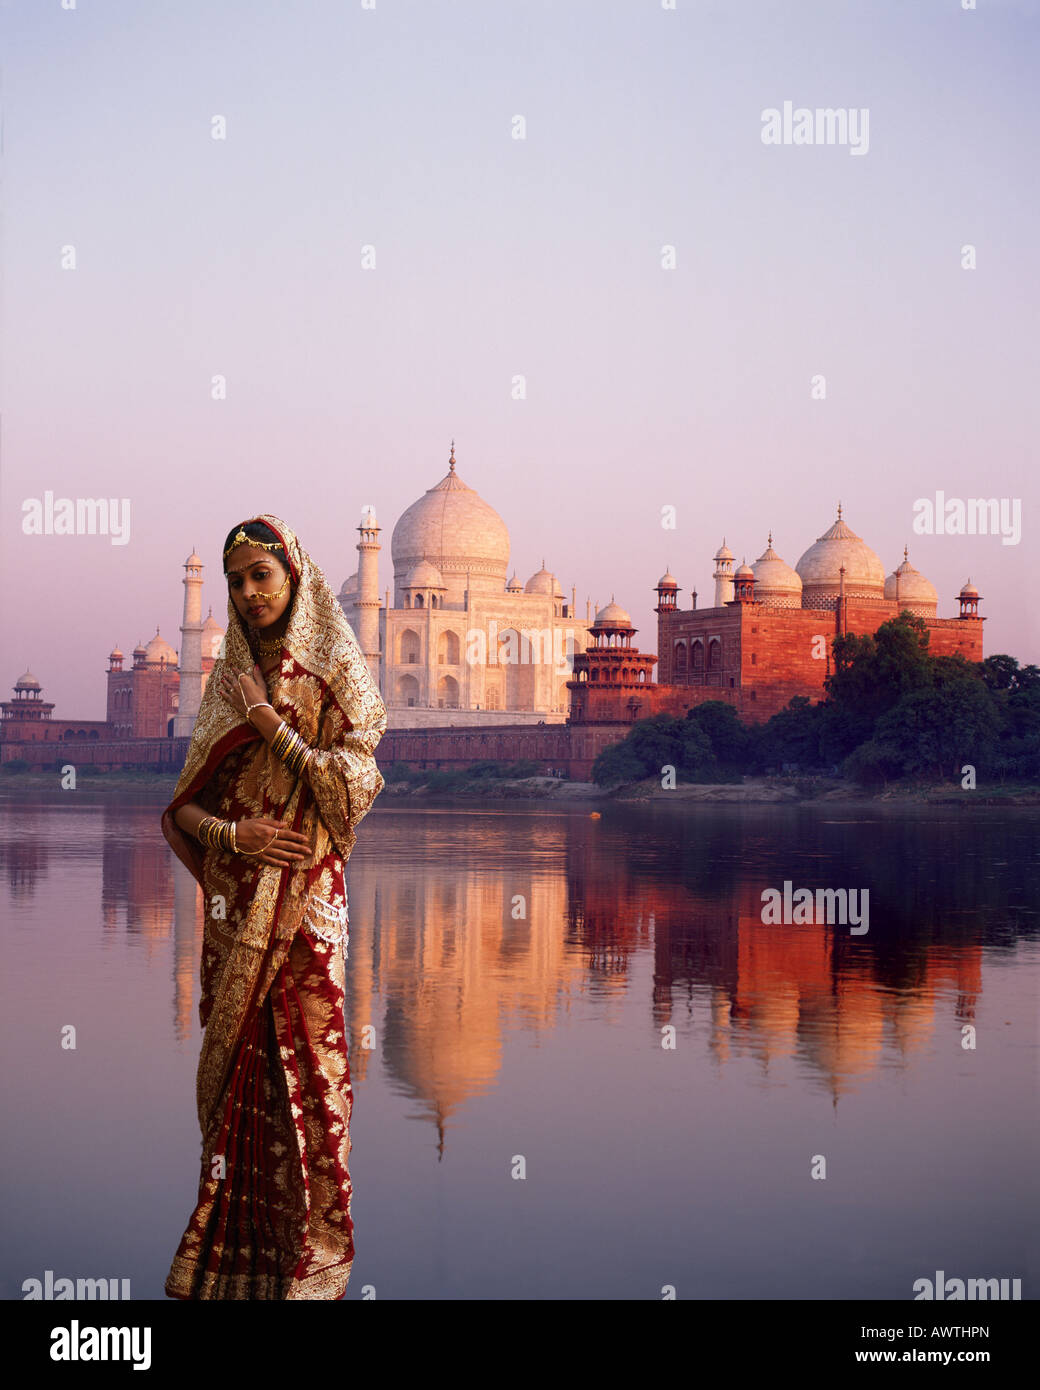 Taj Mahal at sunset and an Indian model Stock Photo